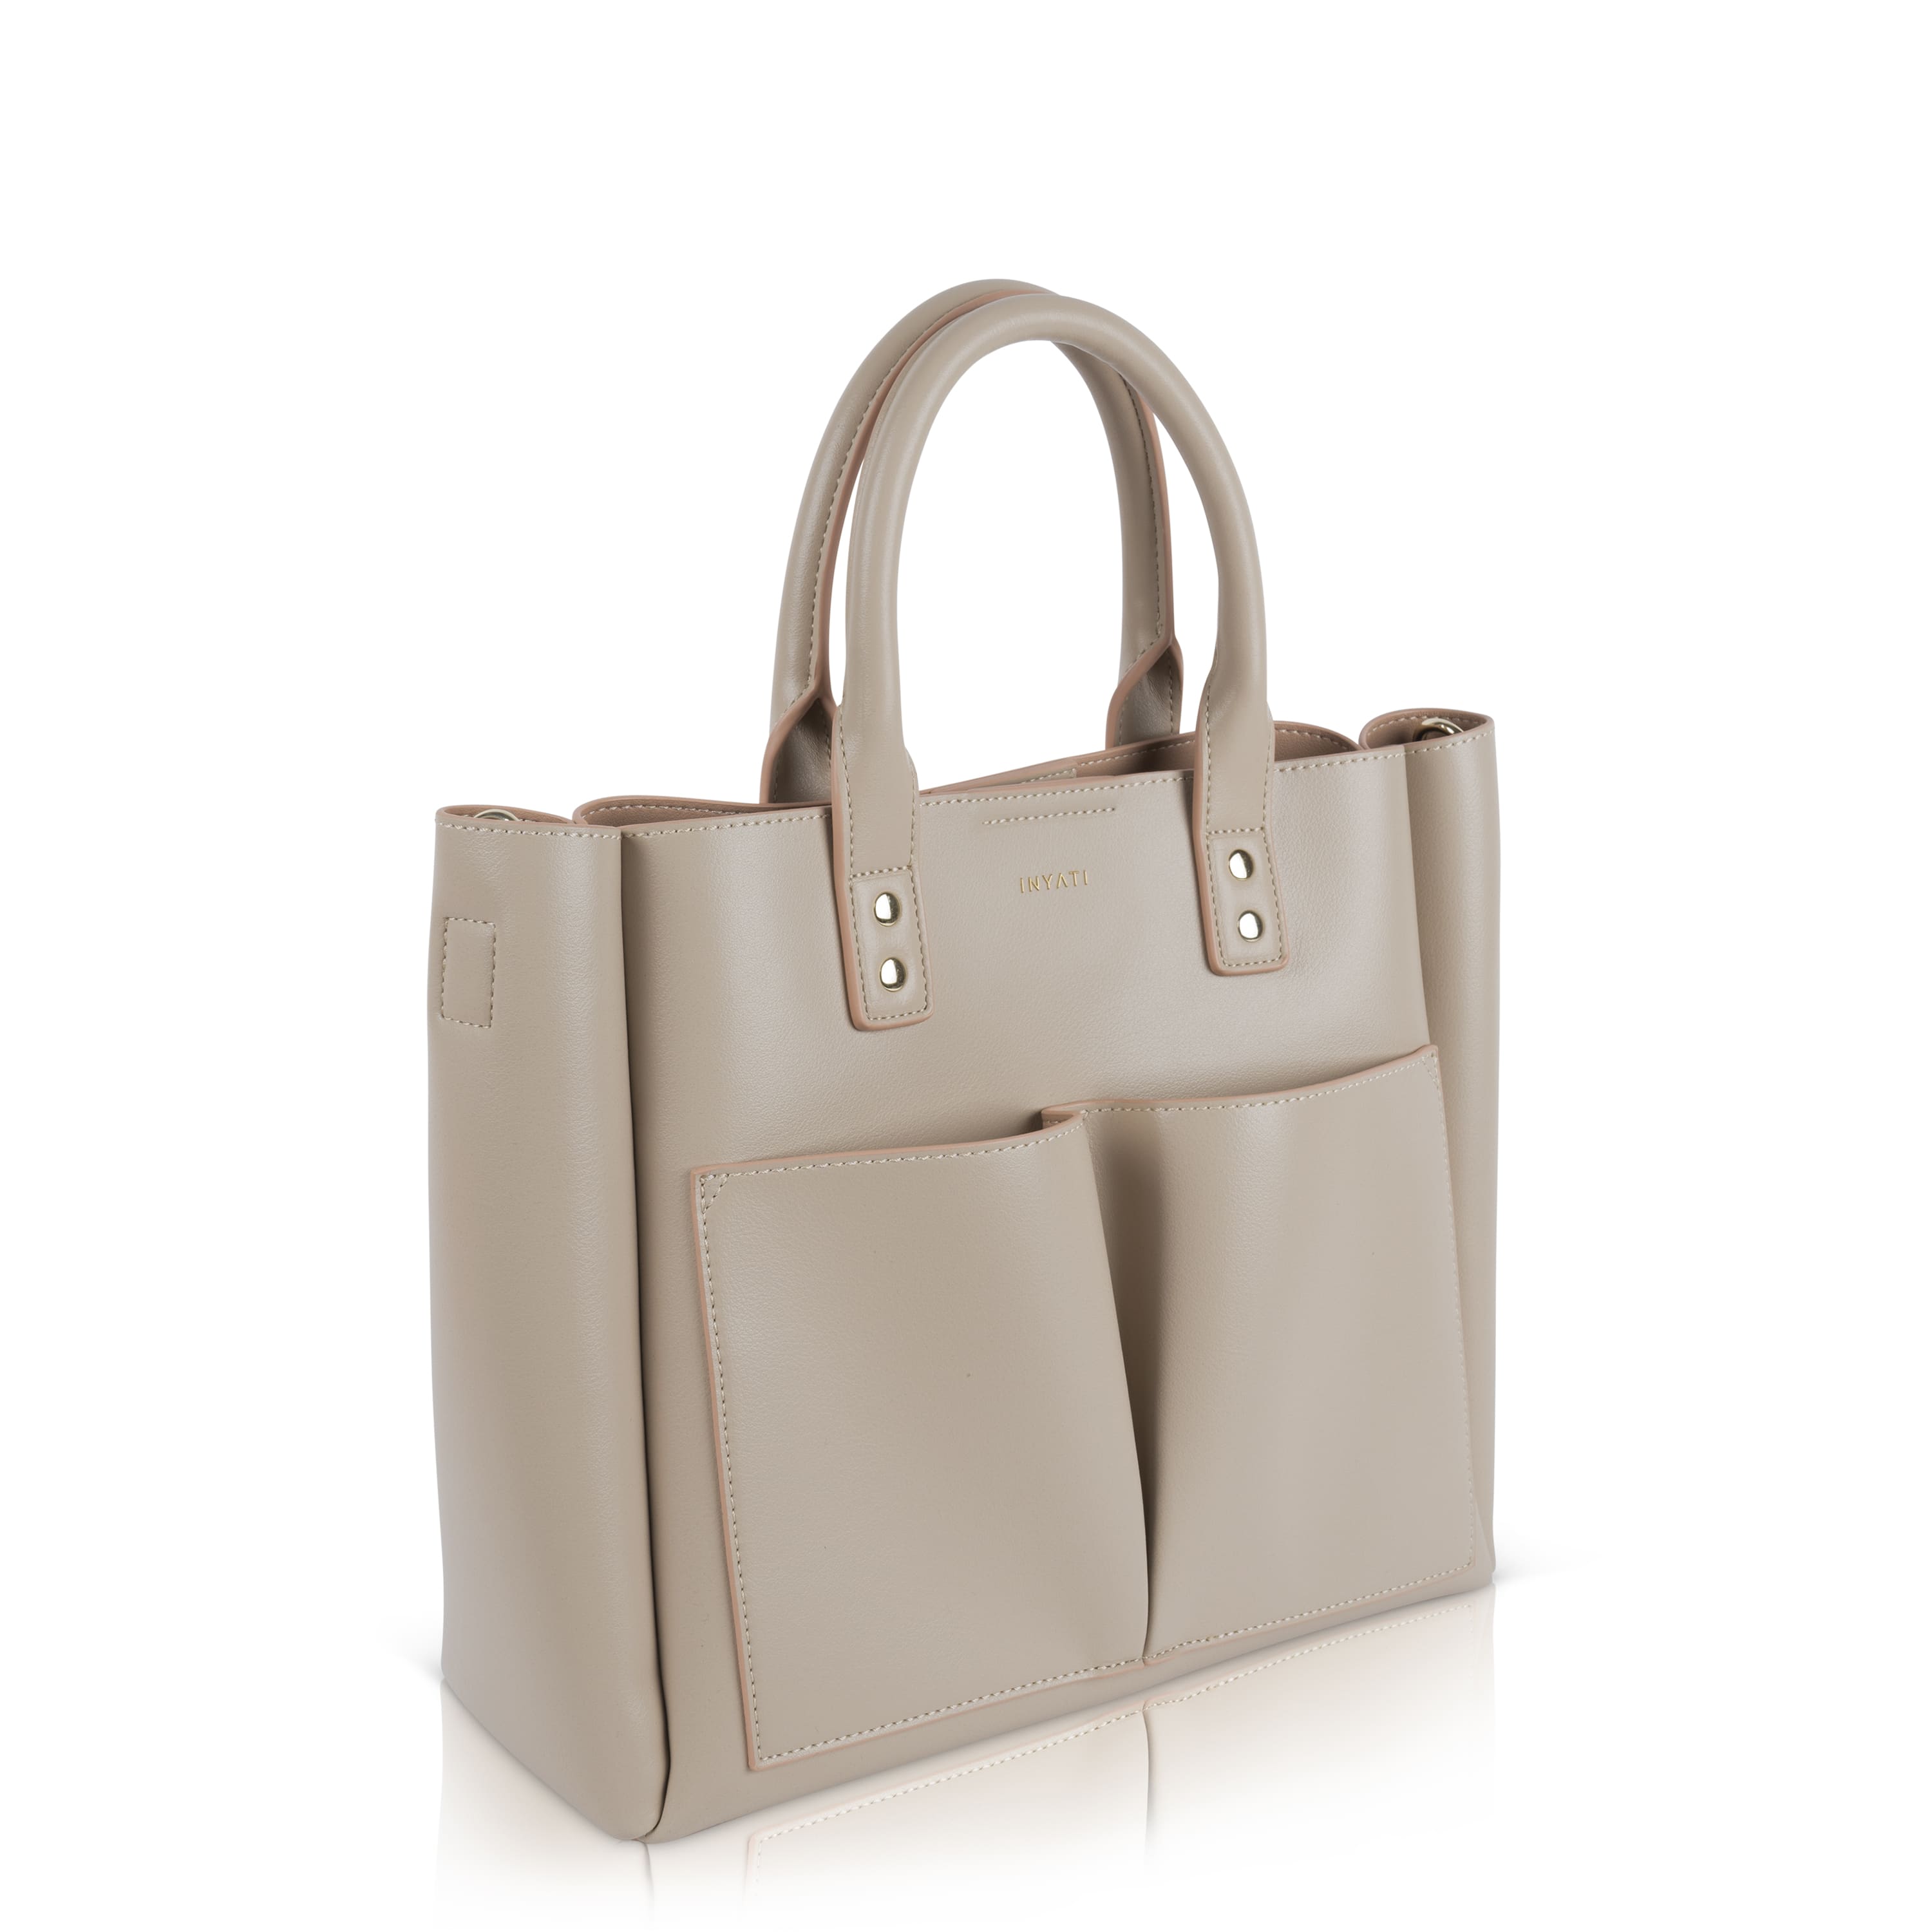 Top Handle Bag "FRISA"